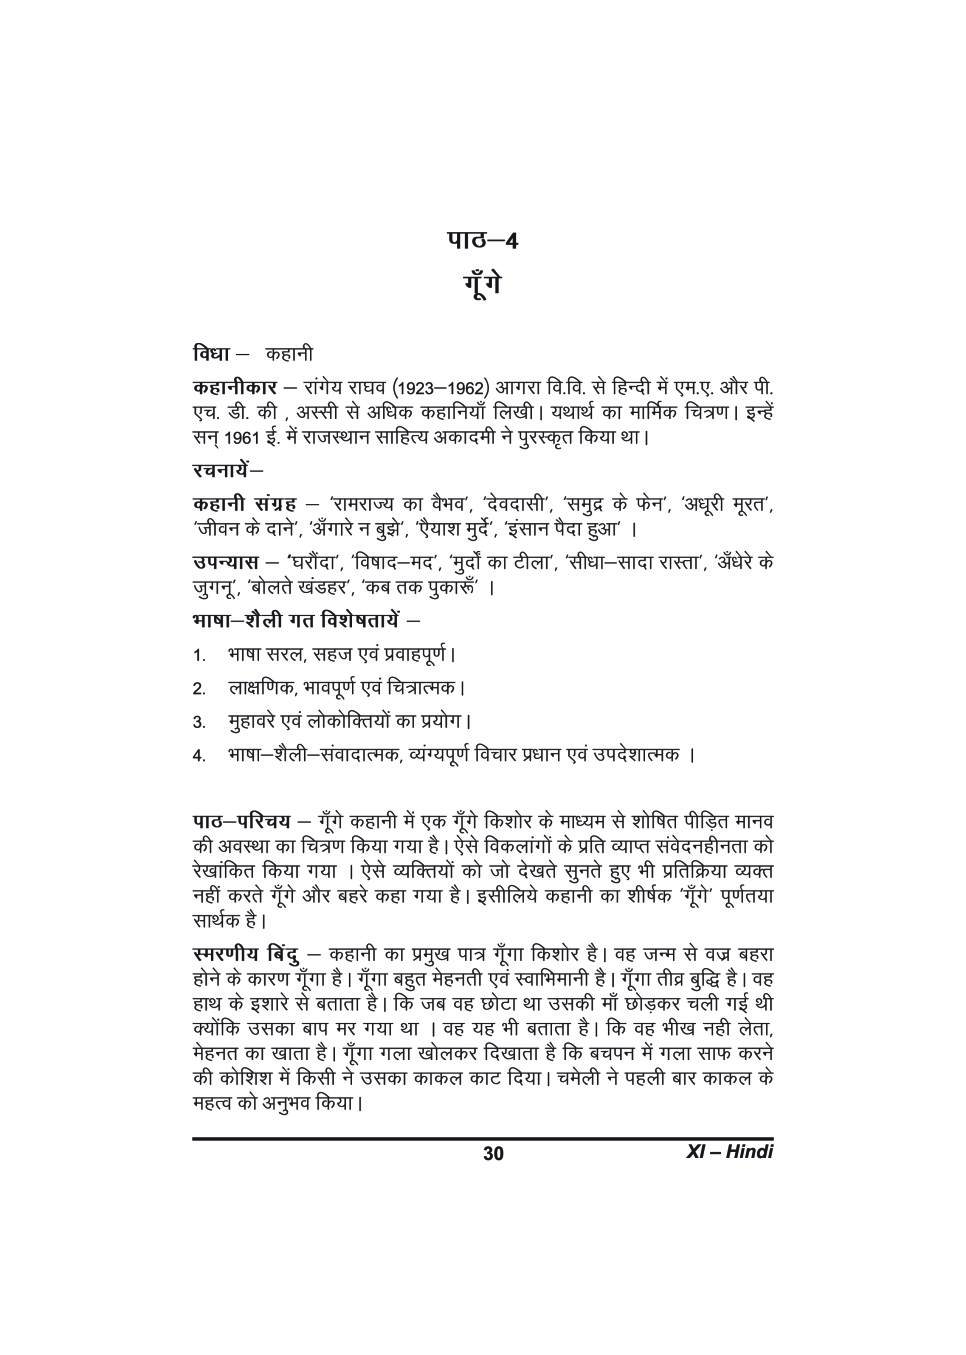 कक्षा 11 हिंदी के नोट्स - गूँगे - Page 1